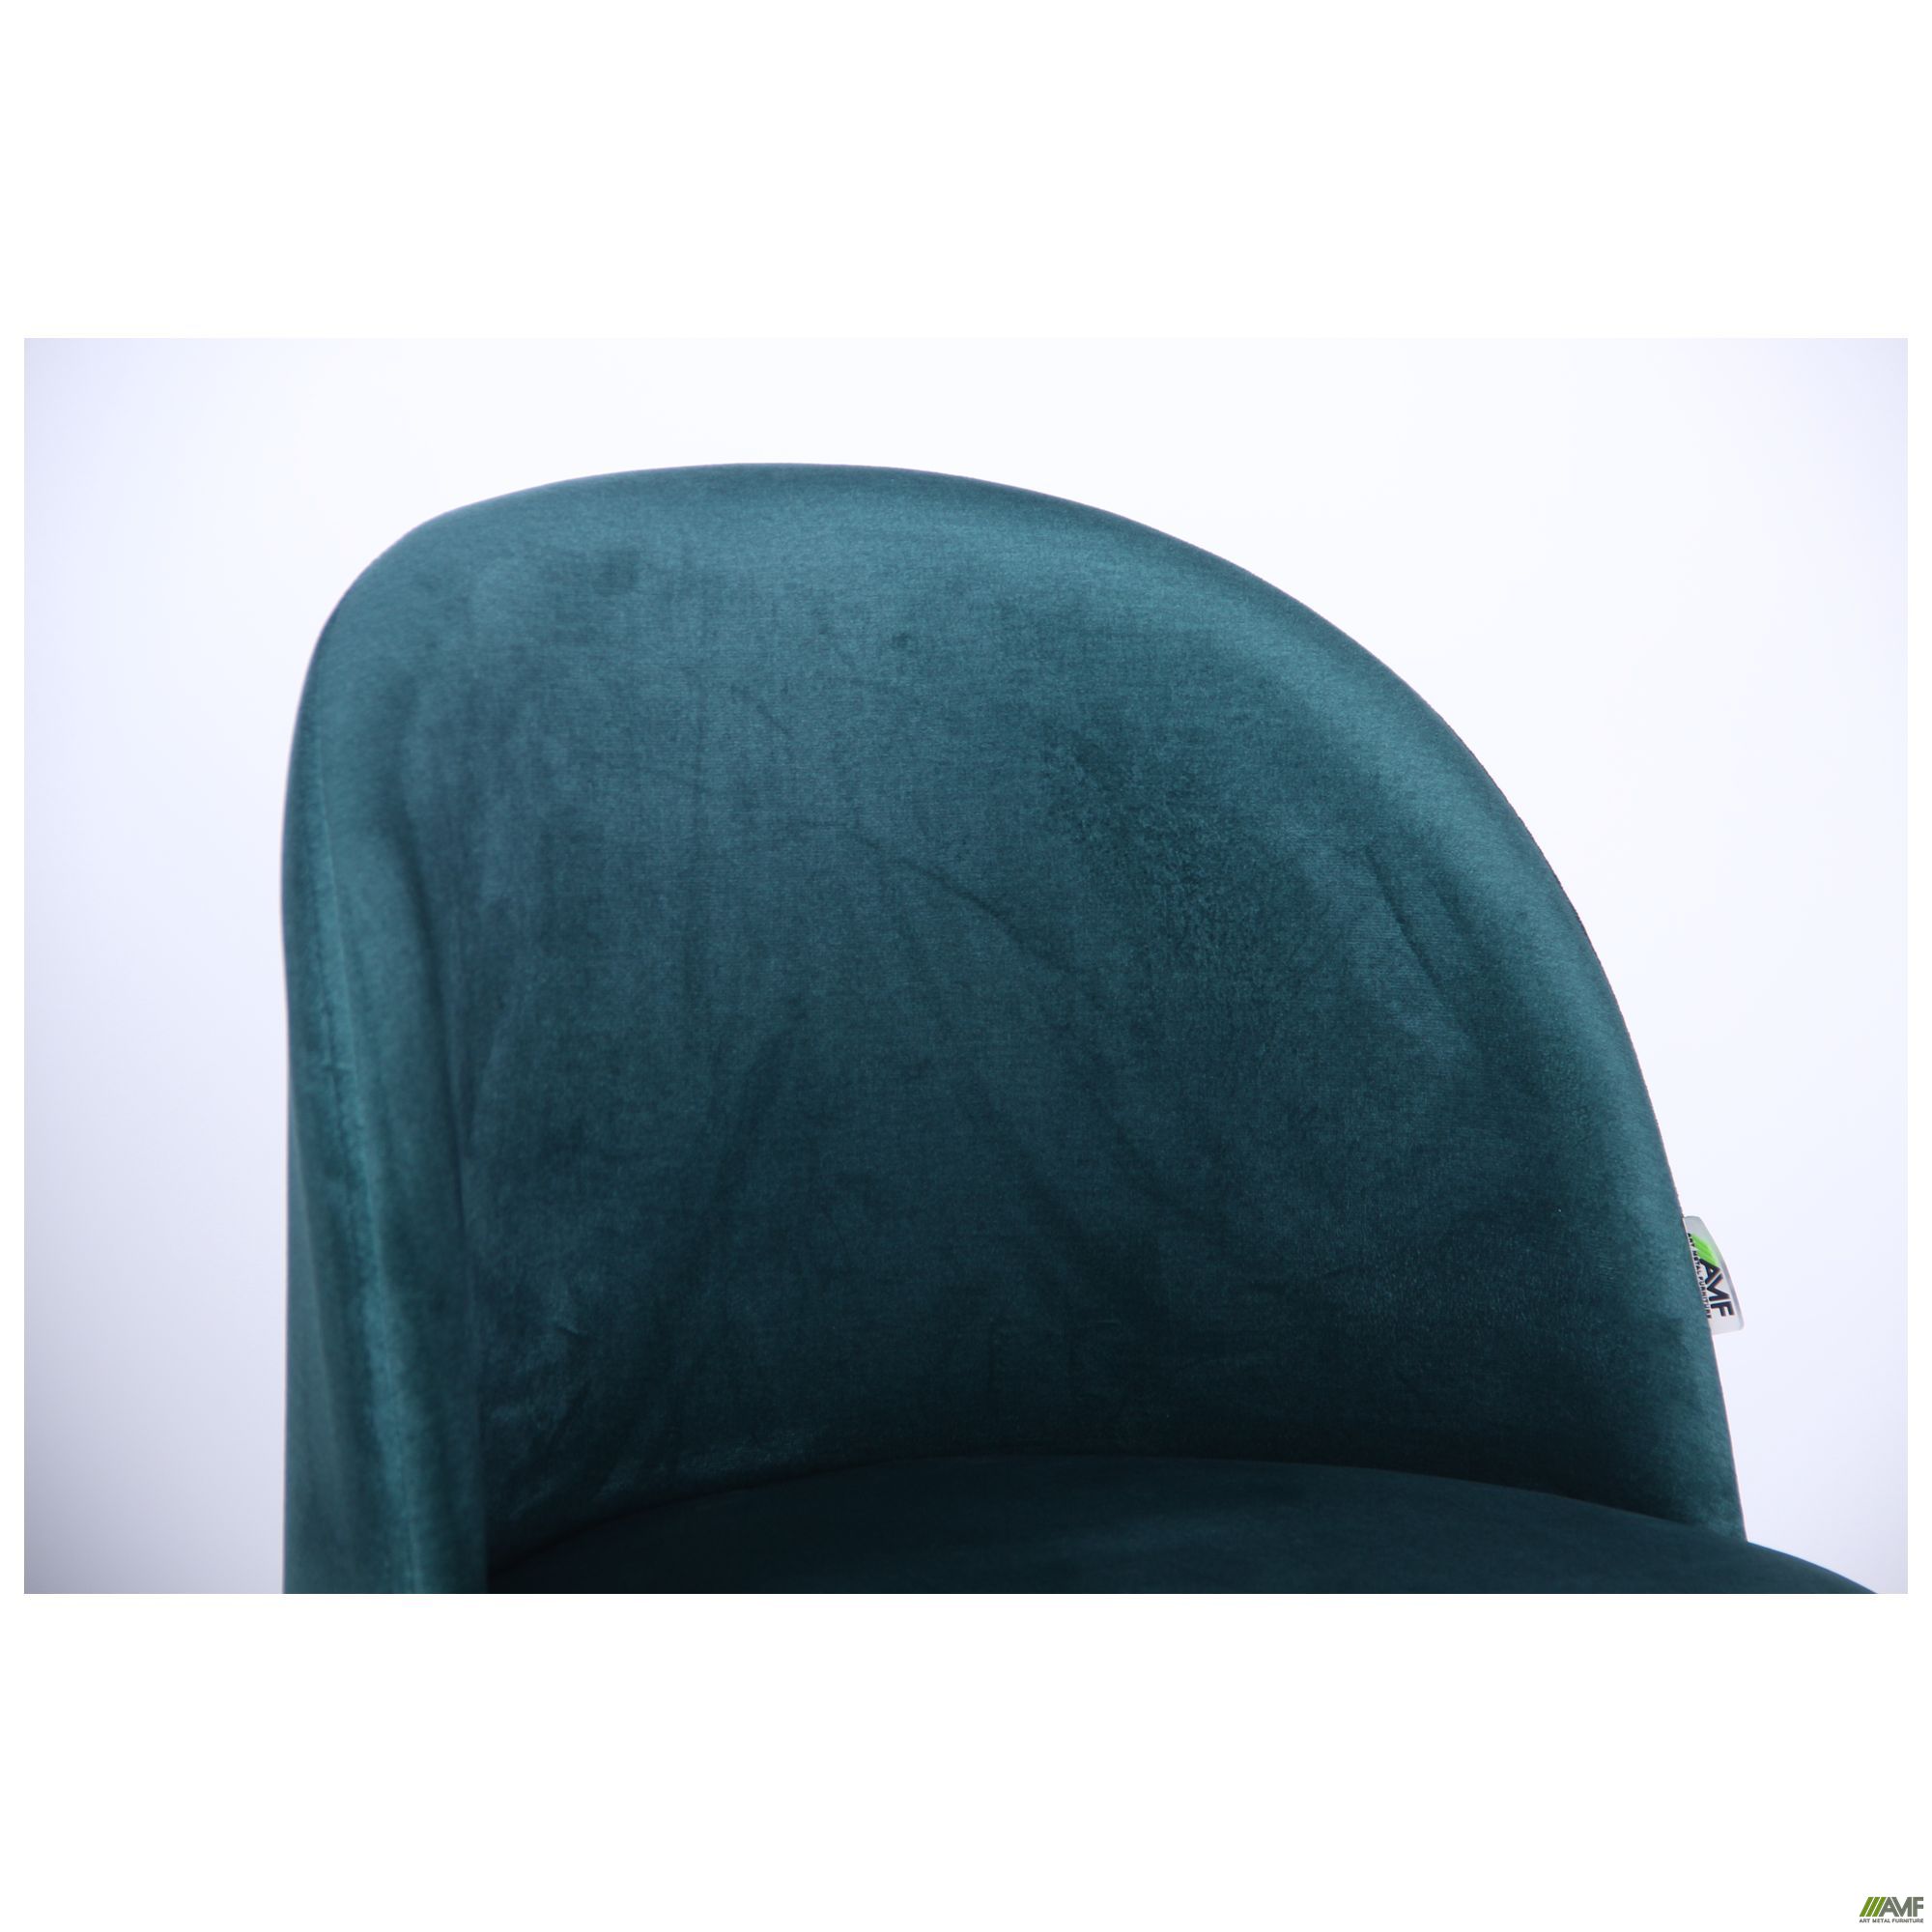 Фото 7 - Стул обеденный Sherry beech/green velvet 